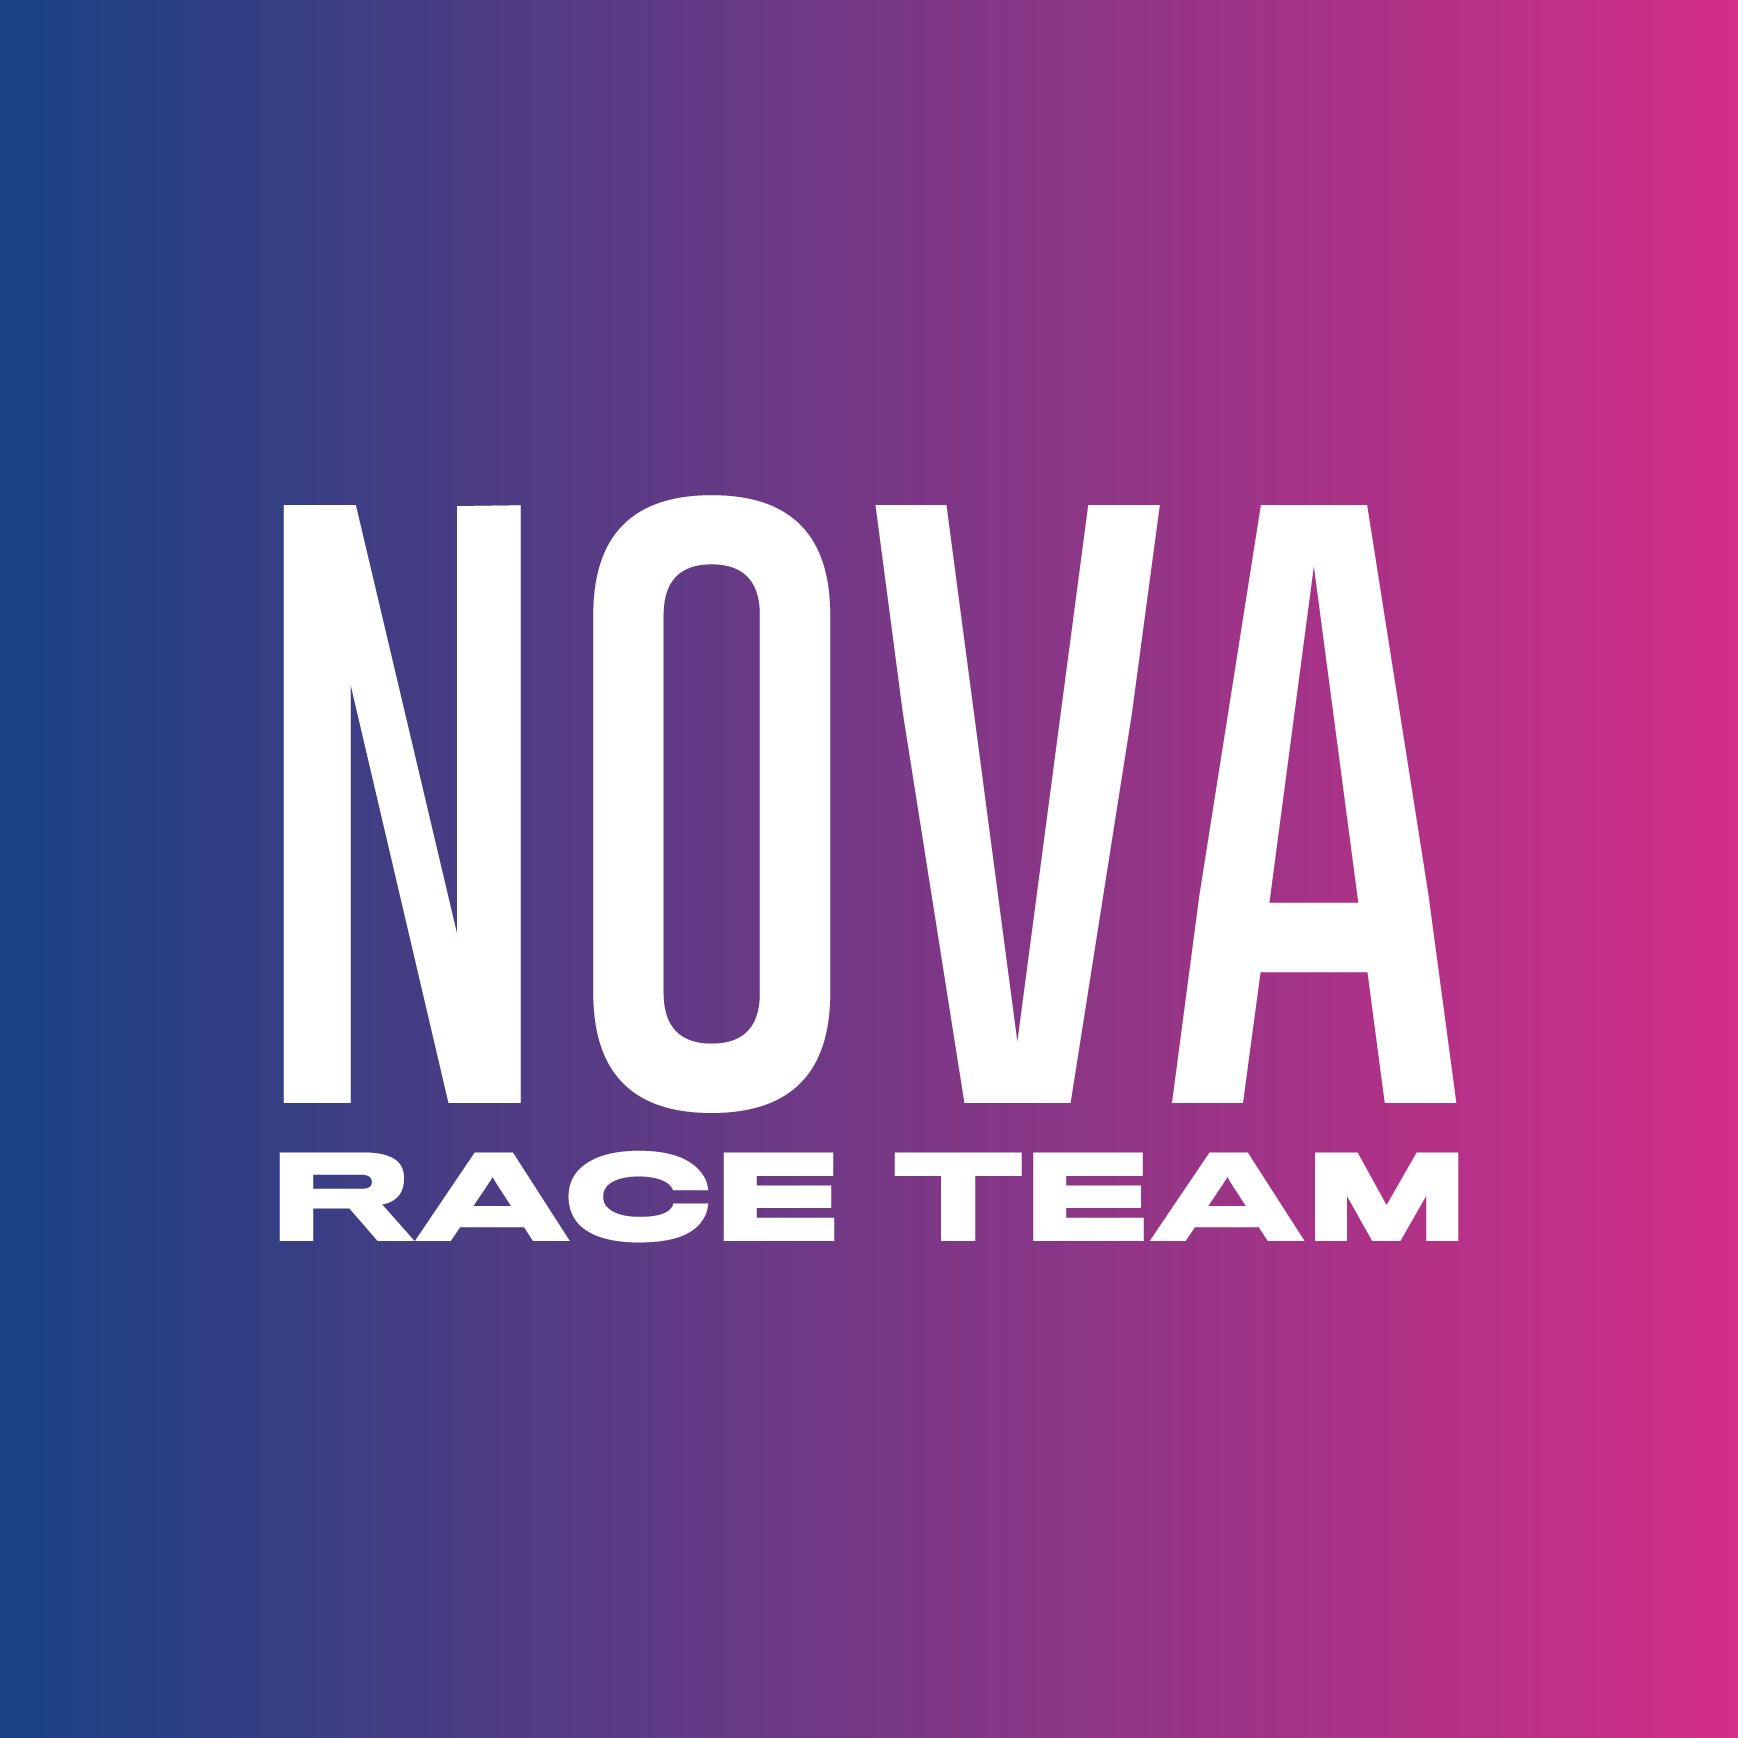 Club Image for NOVA RACE TEAM